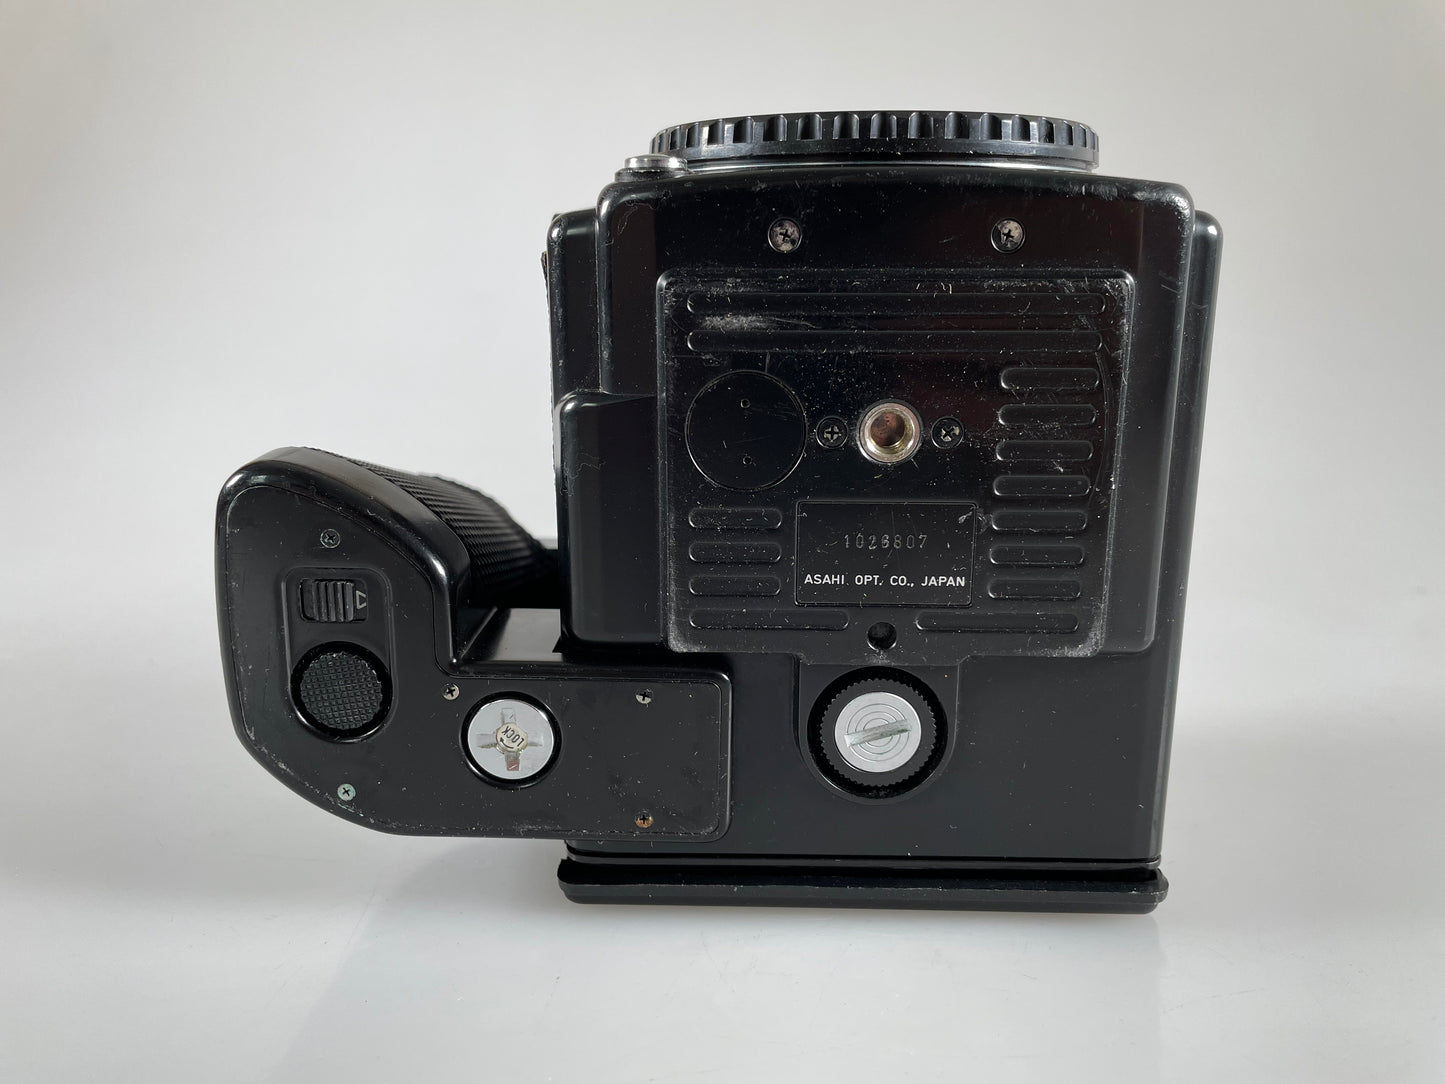 Pentax 645 Medium Format Film Camera Body 120 insert